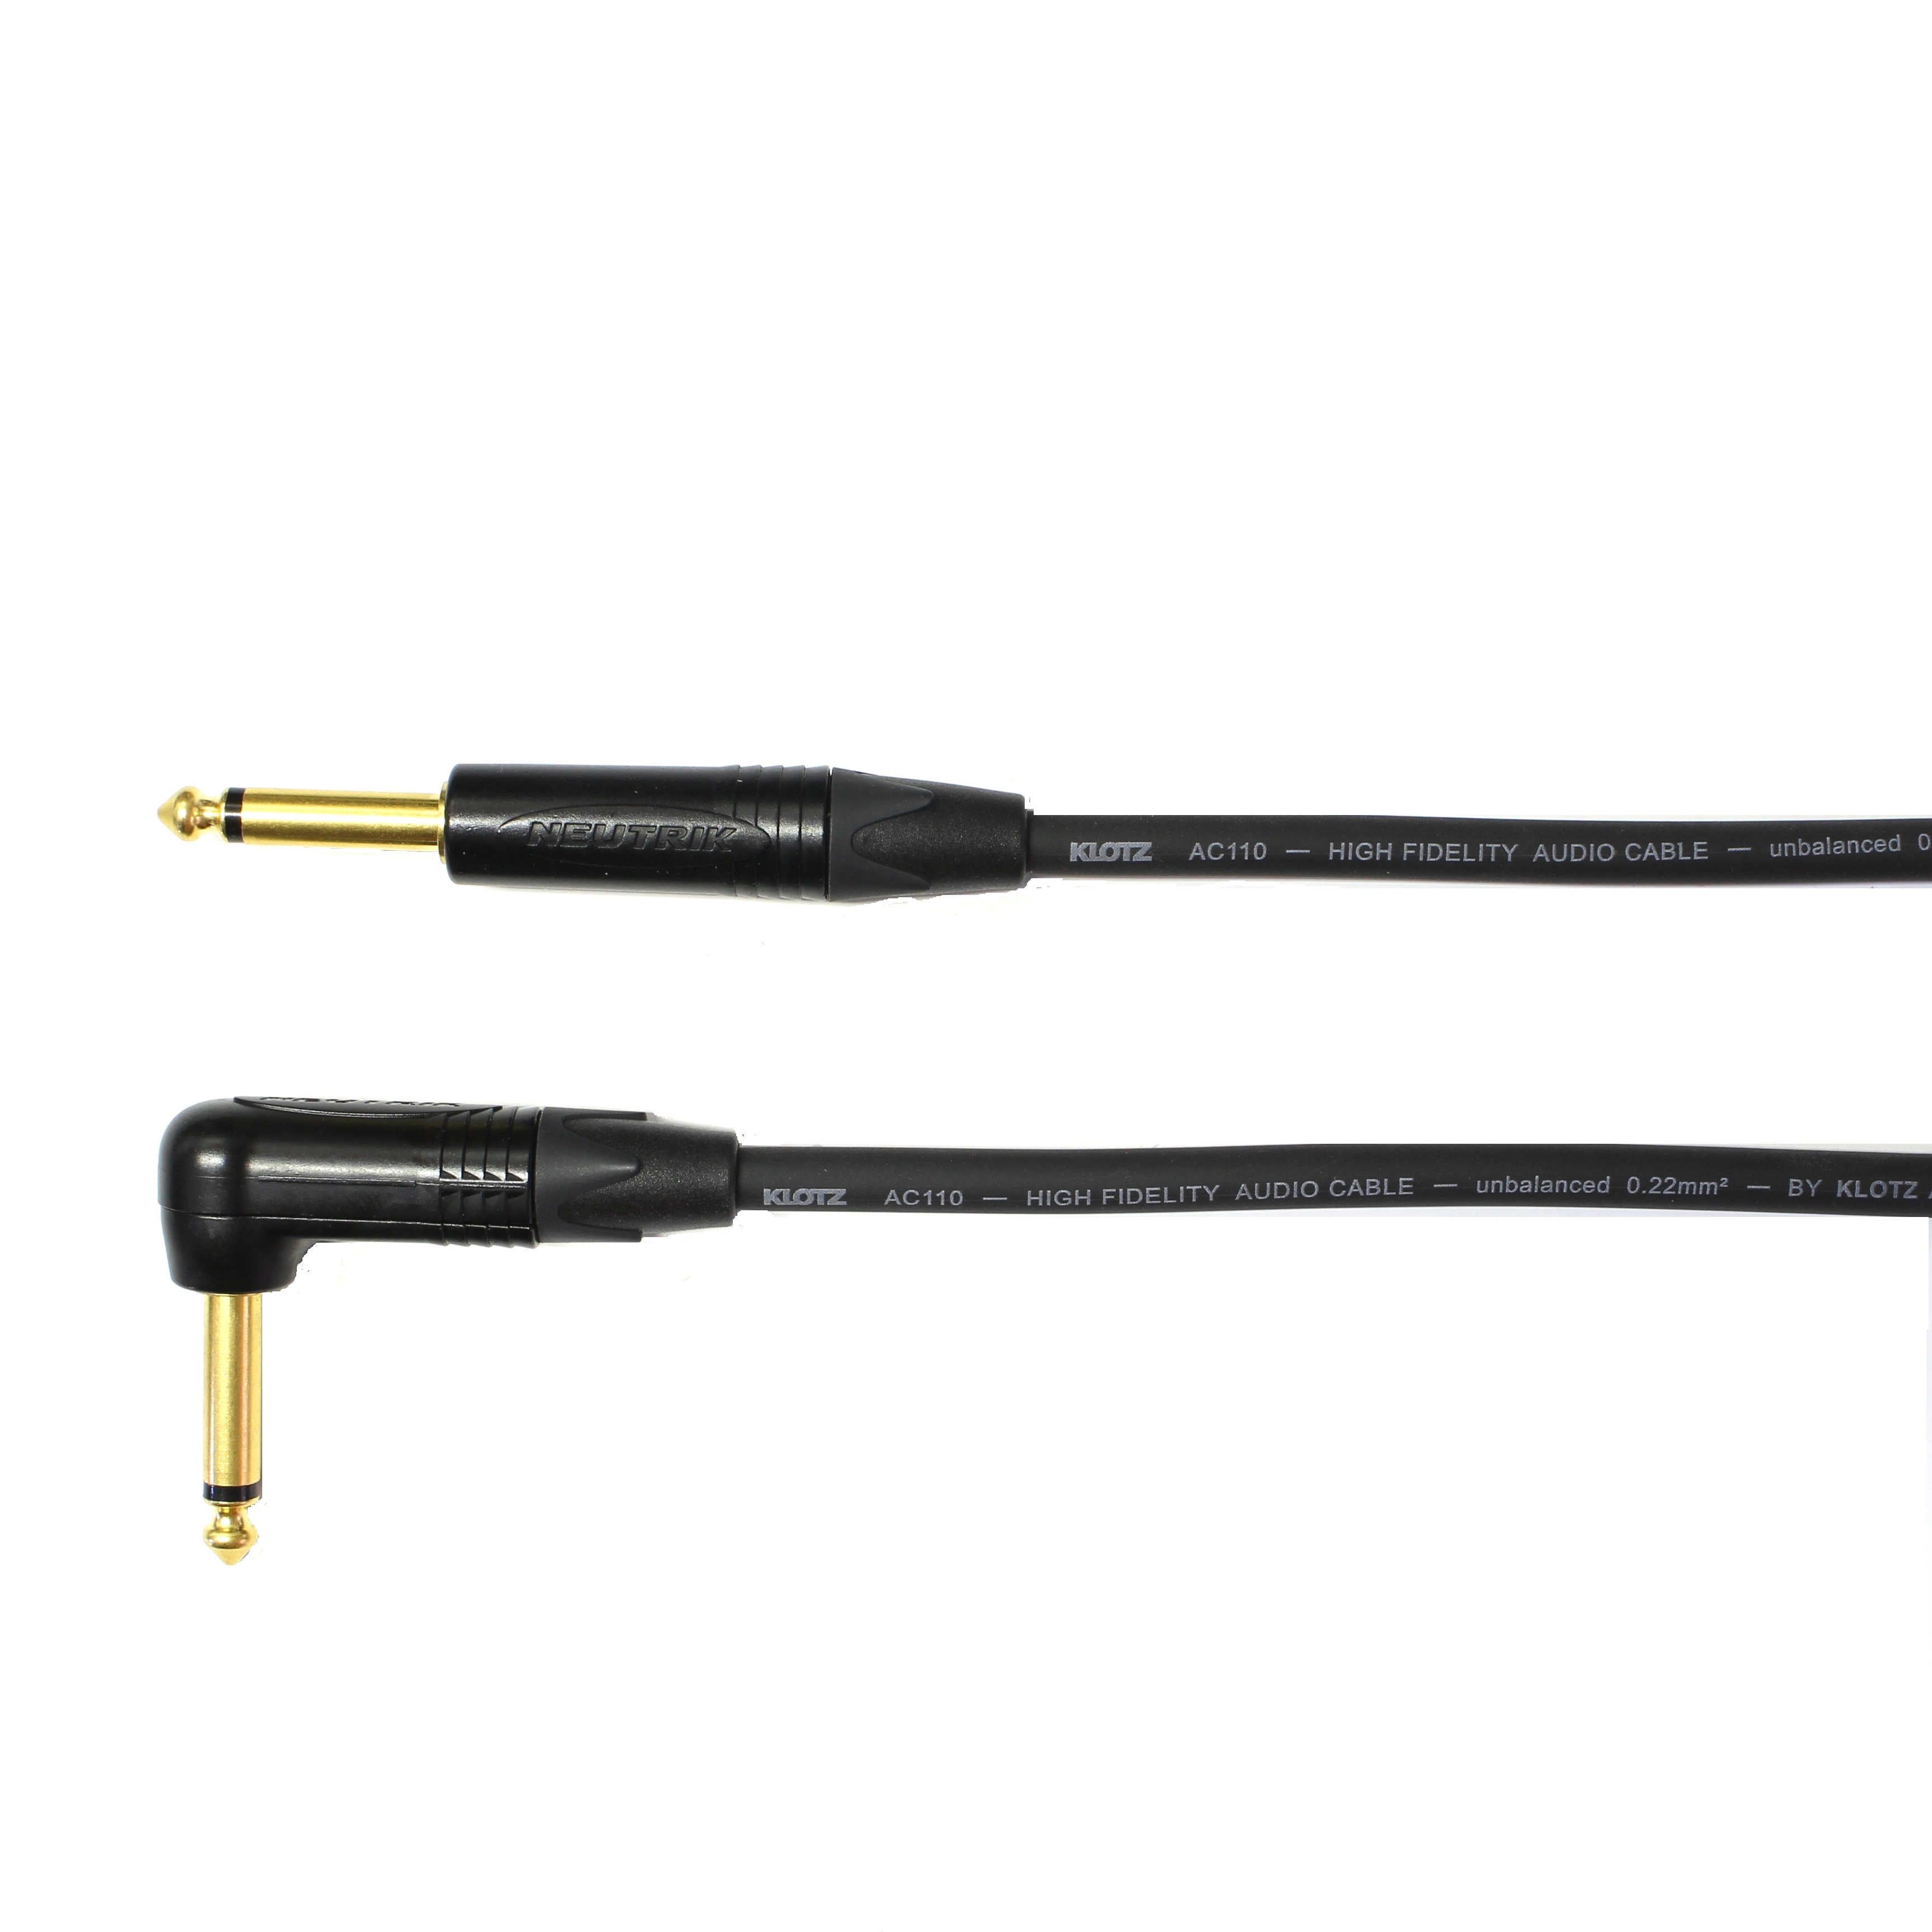 Kytarový kabel Jack 6,3 mono přímý/ Jack 6,3 mono úhlový, 15 cm, AC110